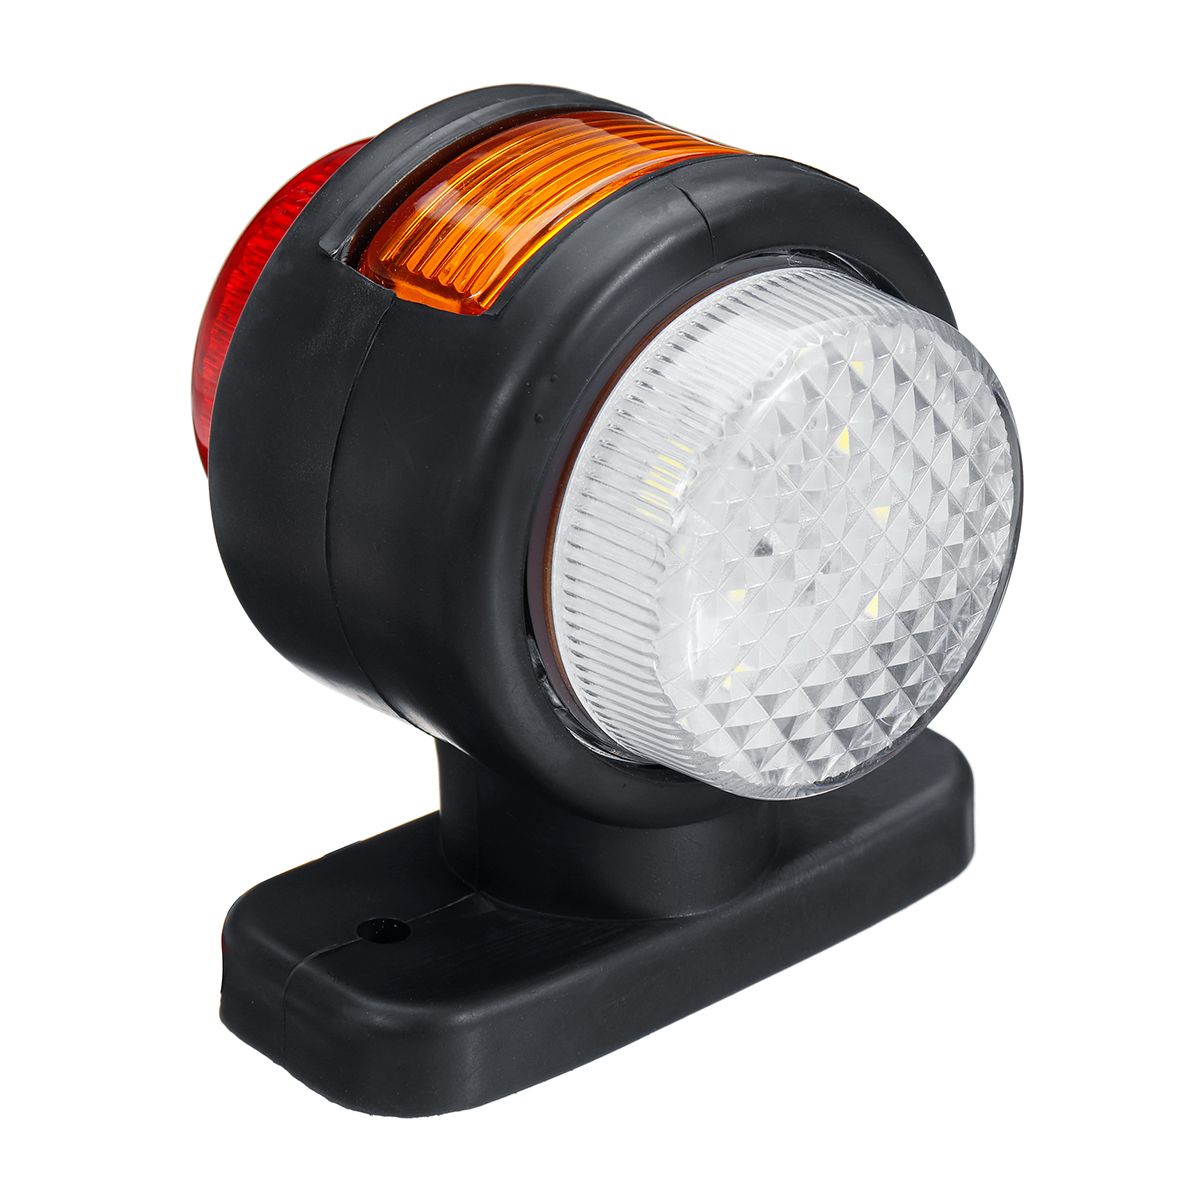 12V-24V-11-LED-Double-Side-Marker-Light-Indicator-Lamp-Rubber-Outline-For-Trailer-Truck-Caravan-Van-1709477